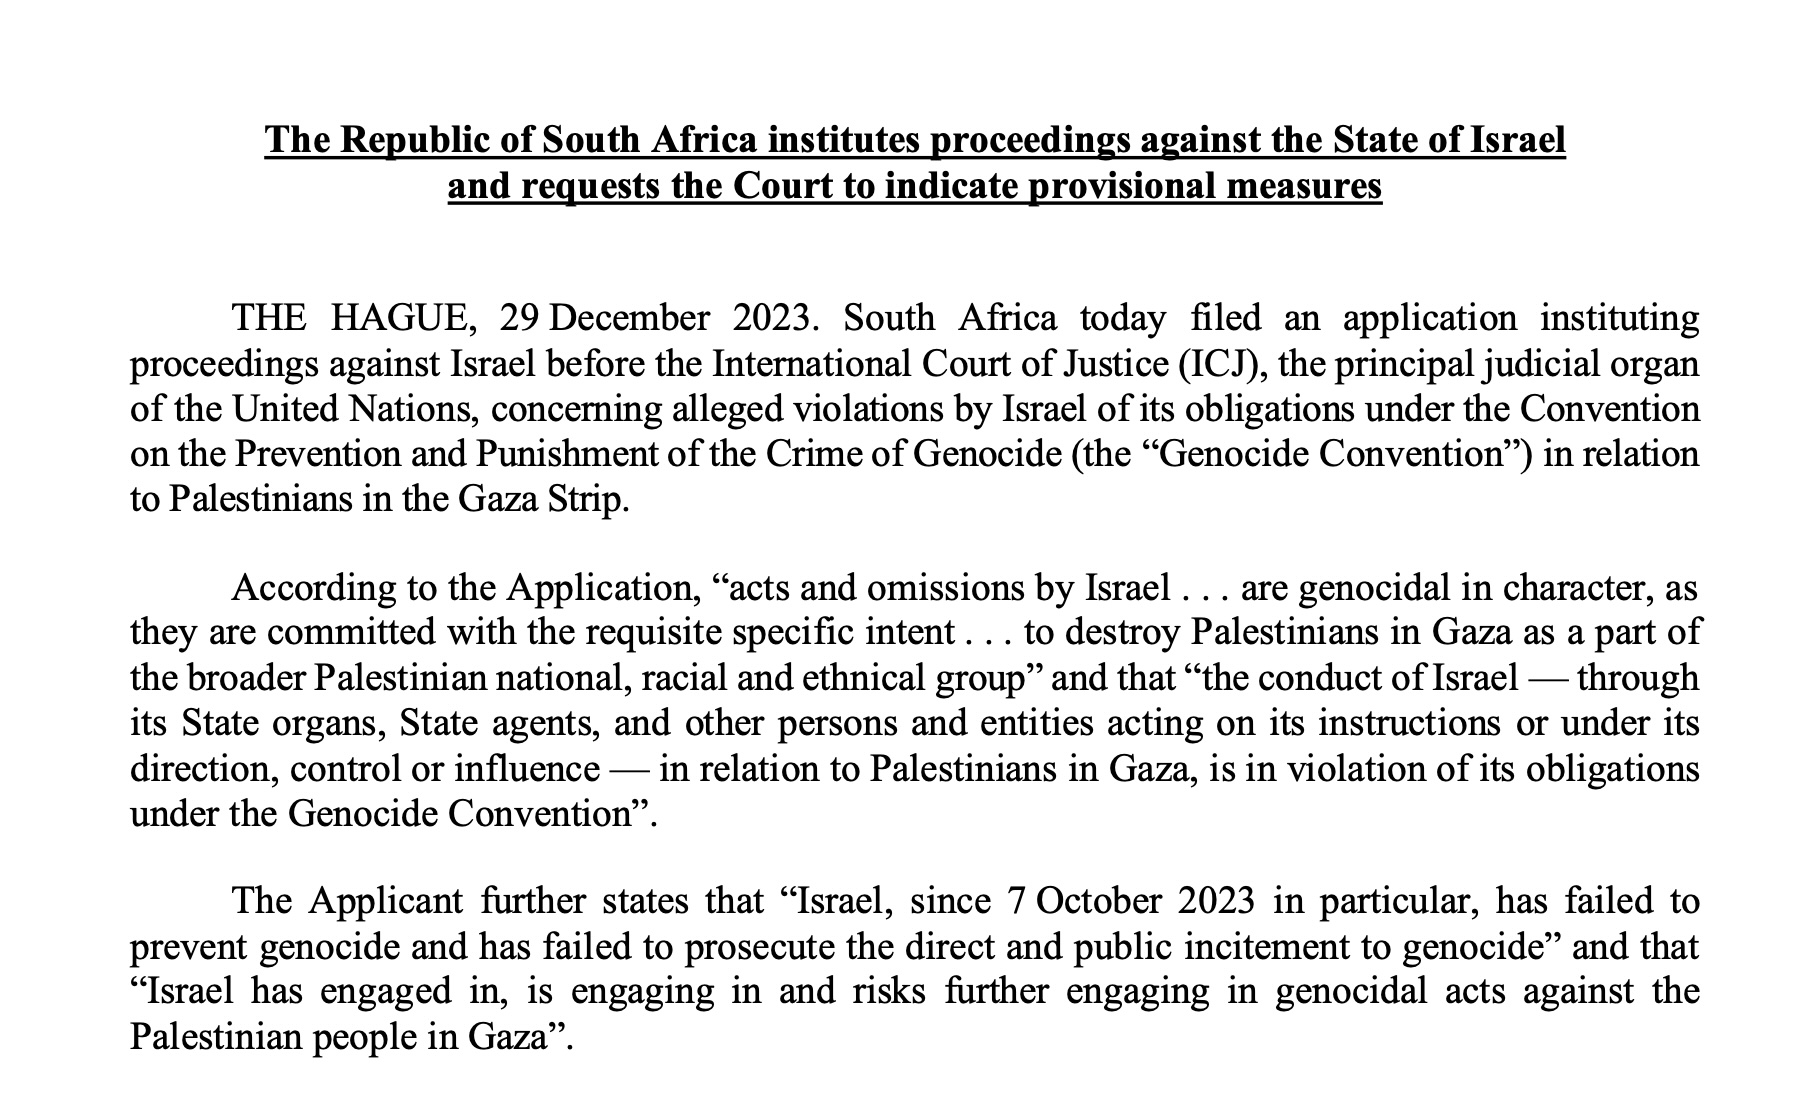 دعوى قدّمتها جنوب إفريقيا ضد إسرائيل أمام محكمة العدل الدولية